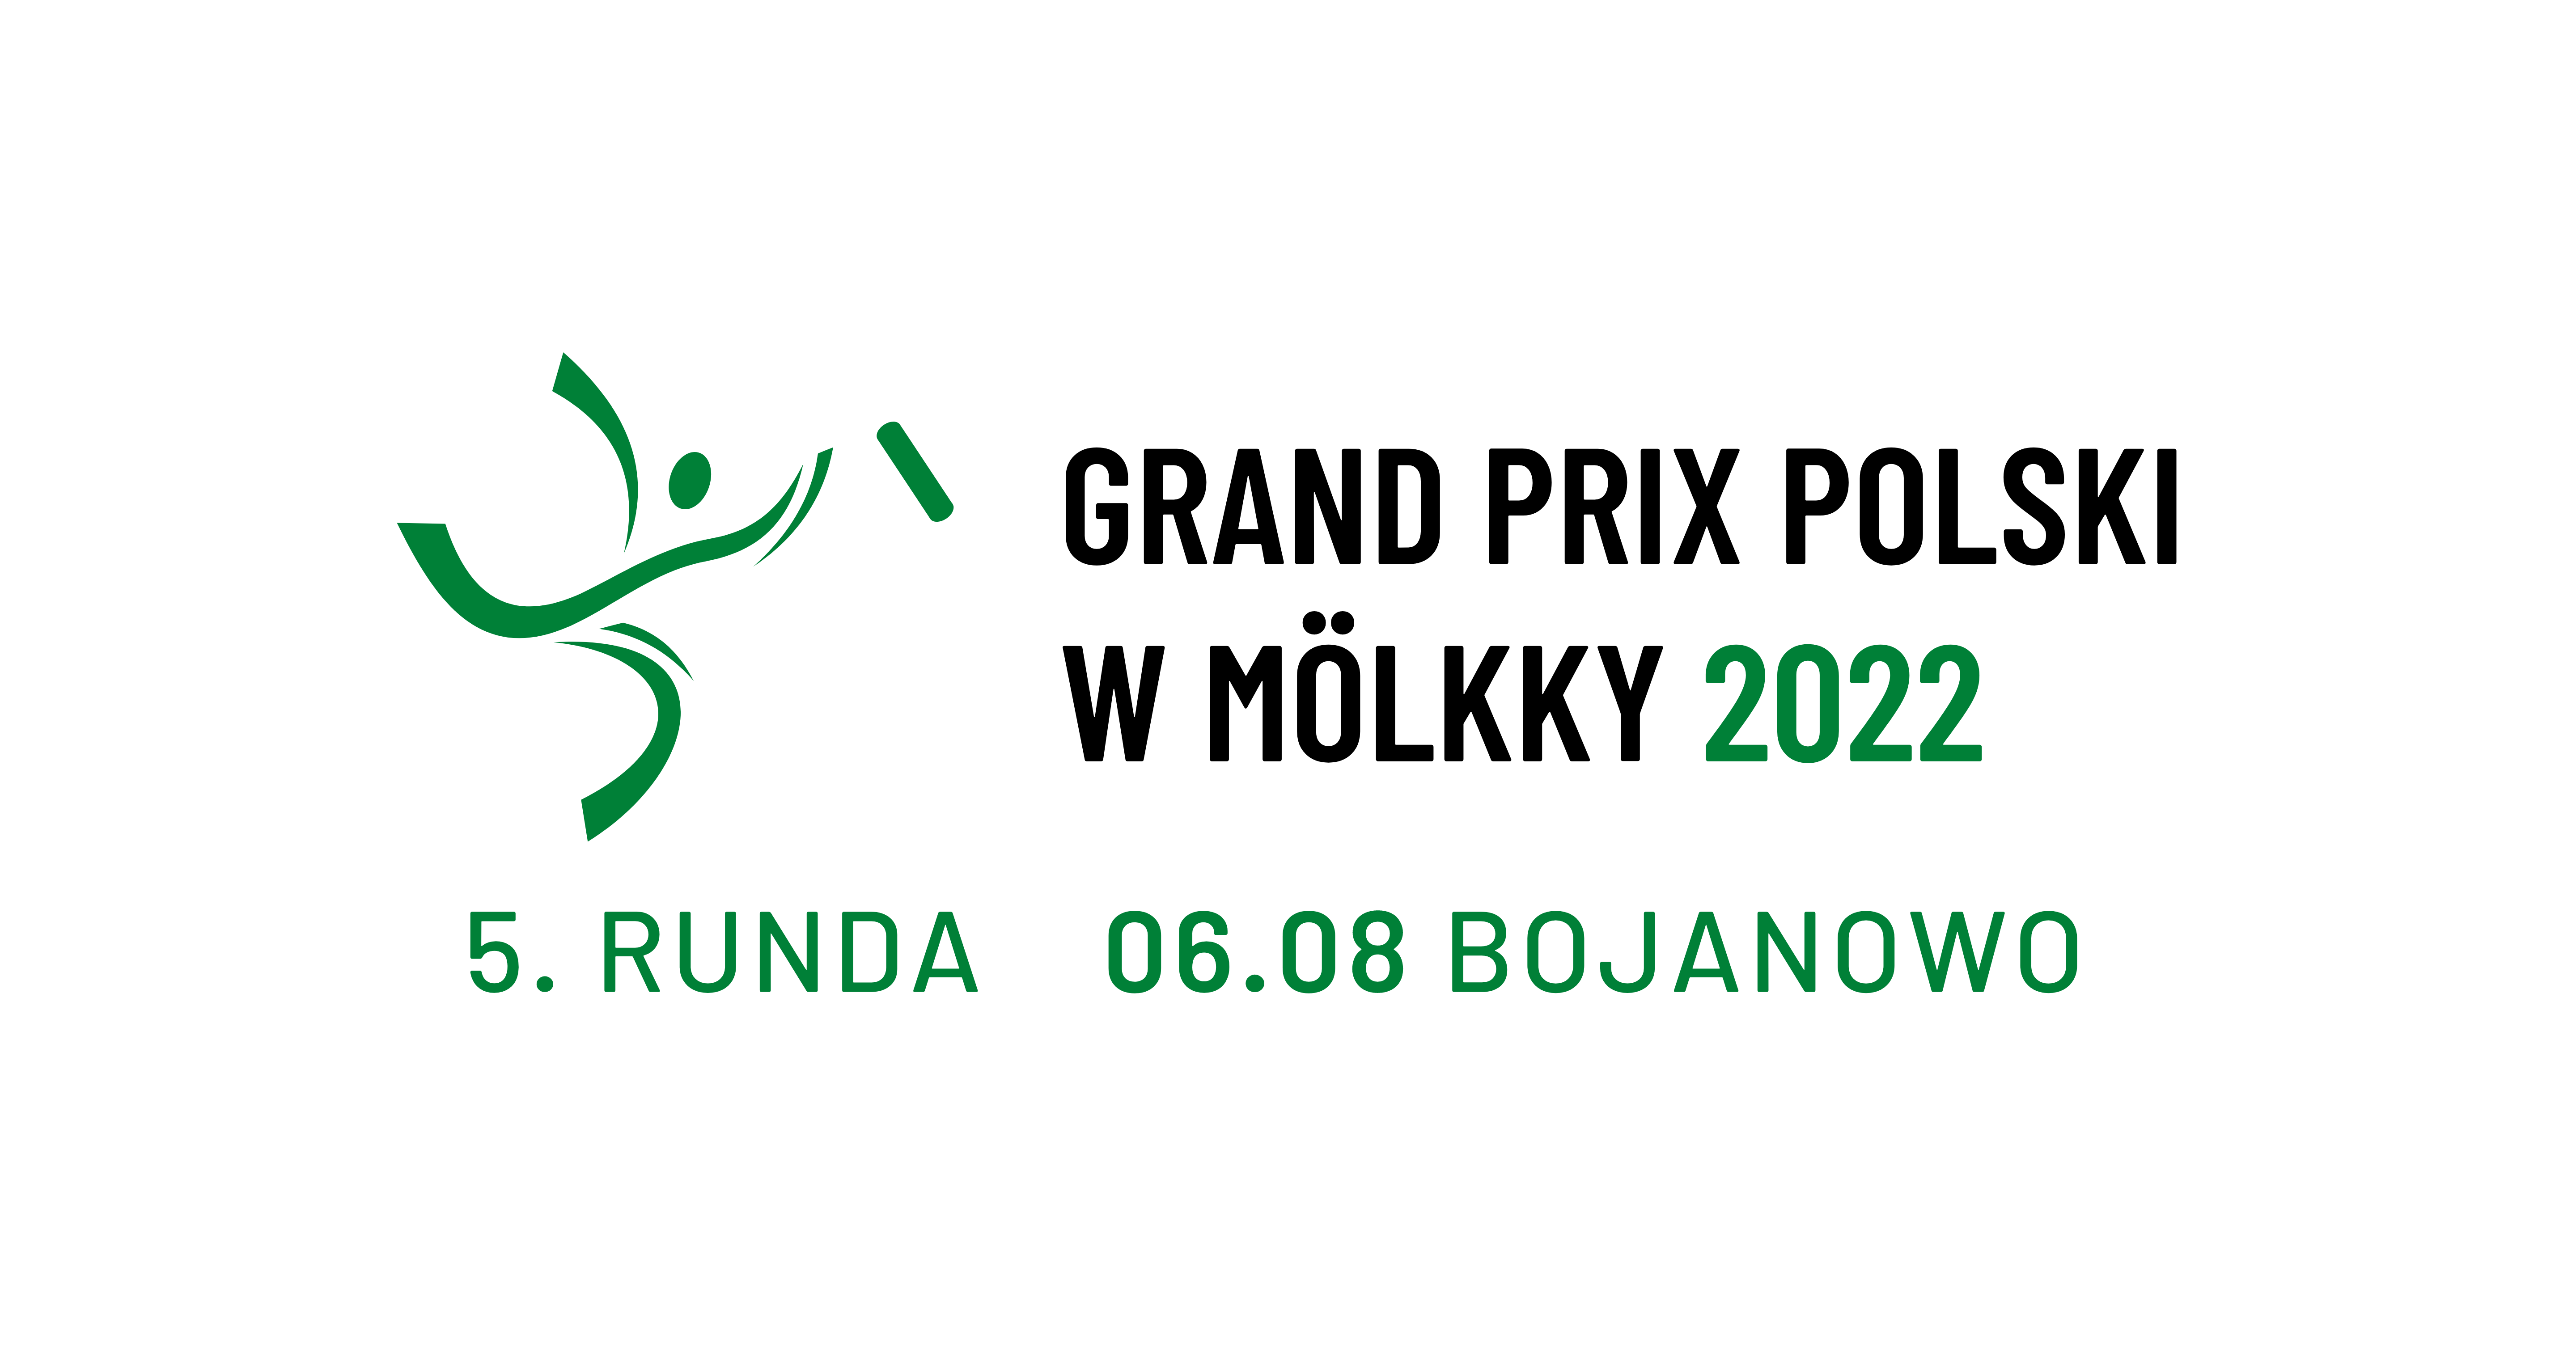 Grand Prix of Poland - event 5/6